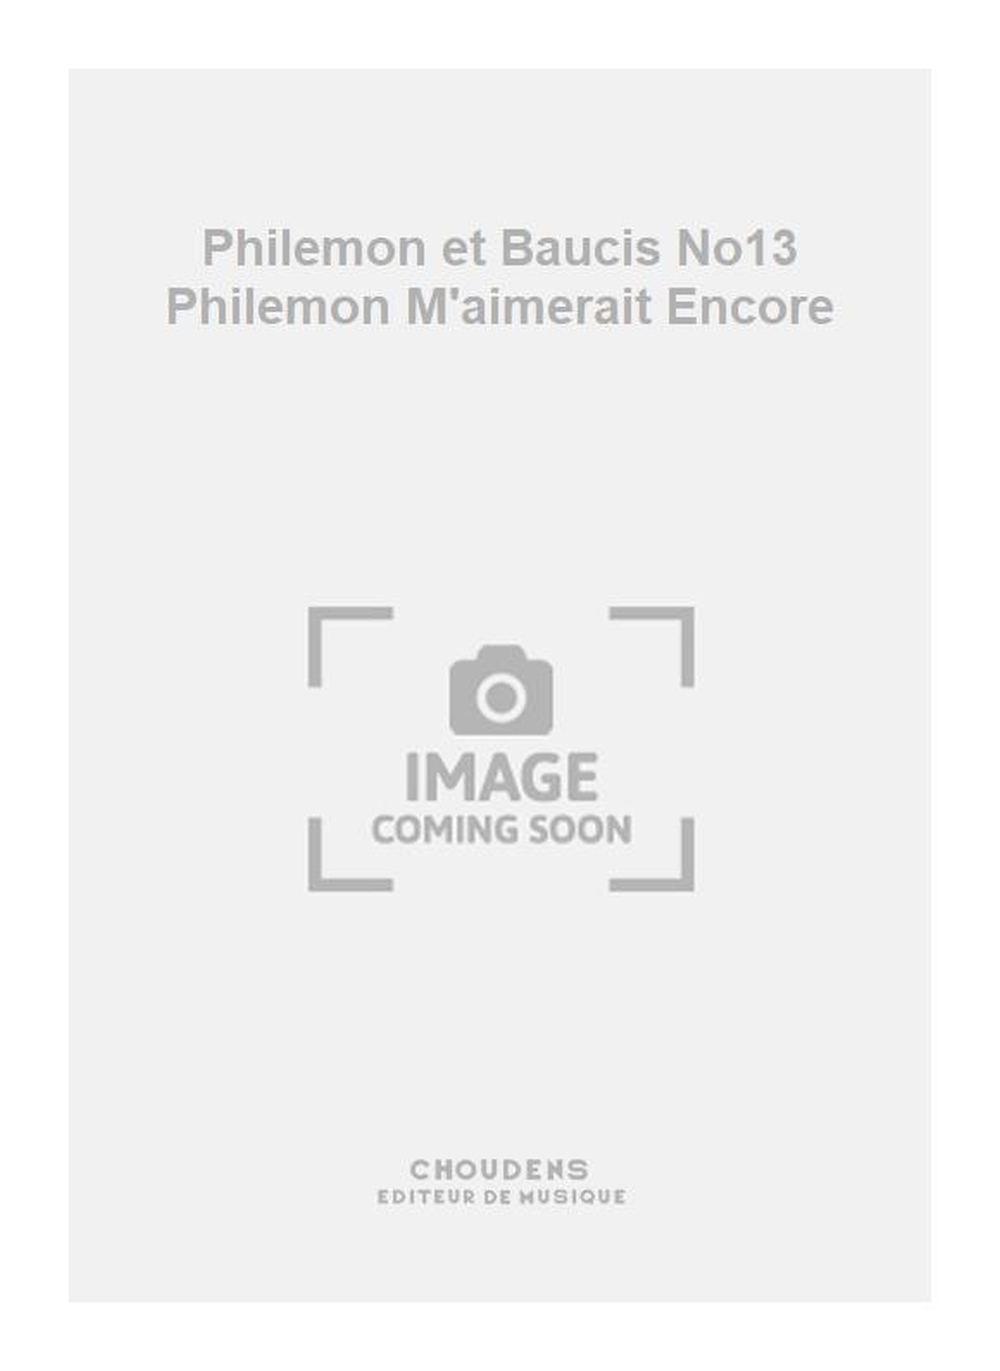 Charles Gounod: Philemon et Baucis No13 Philemon M'aimerait Encore